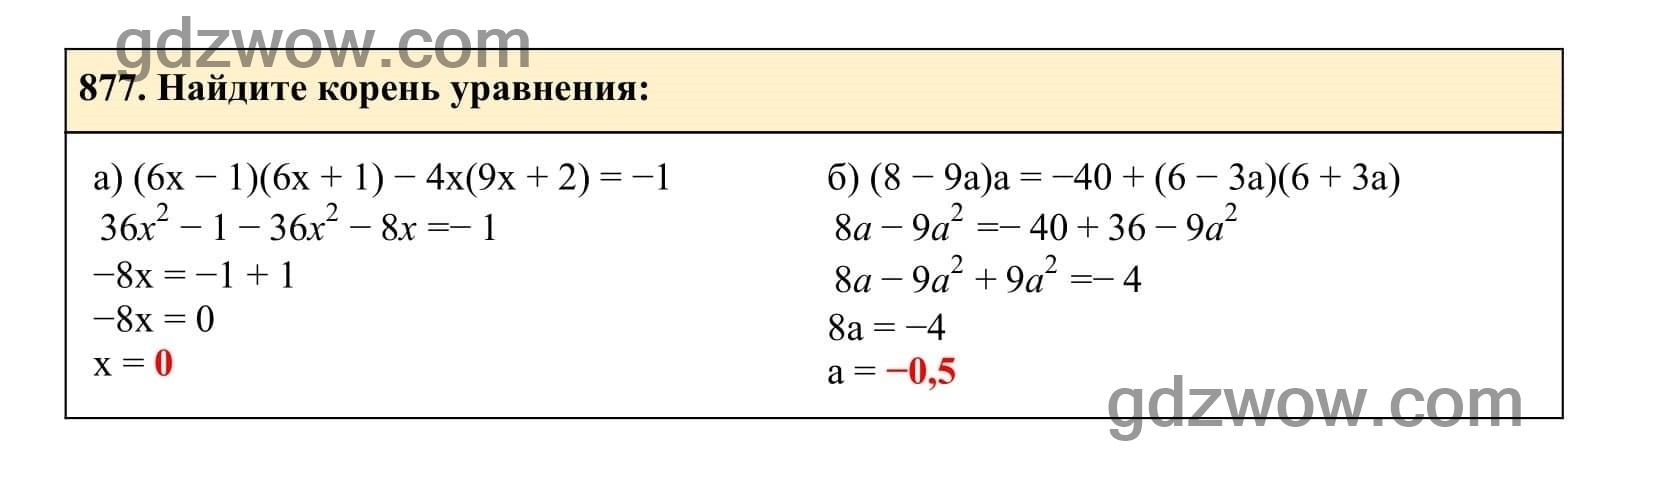 Упражнение 877 - ГДЗ по Алгебре 7 класс Учебник Макарычев (решебник) - GDZwow